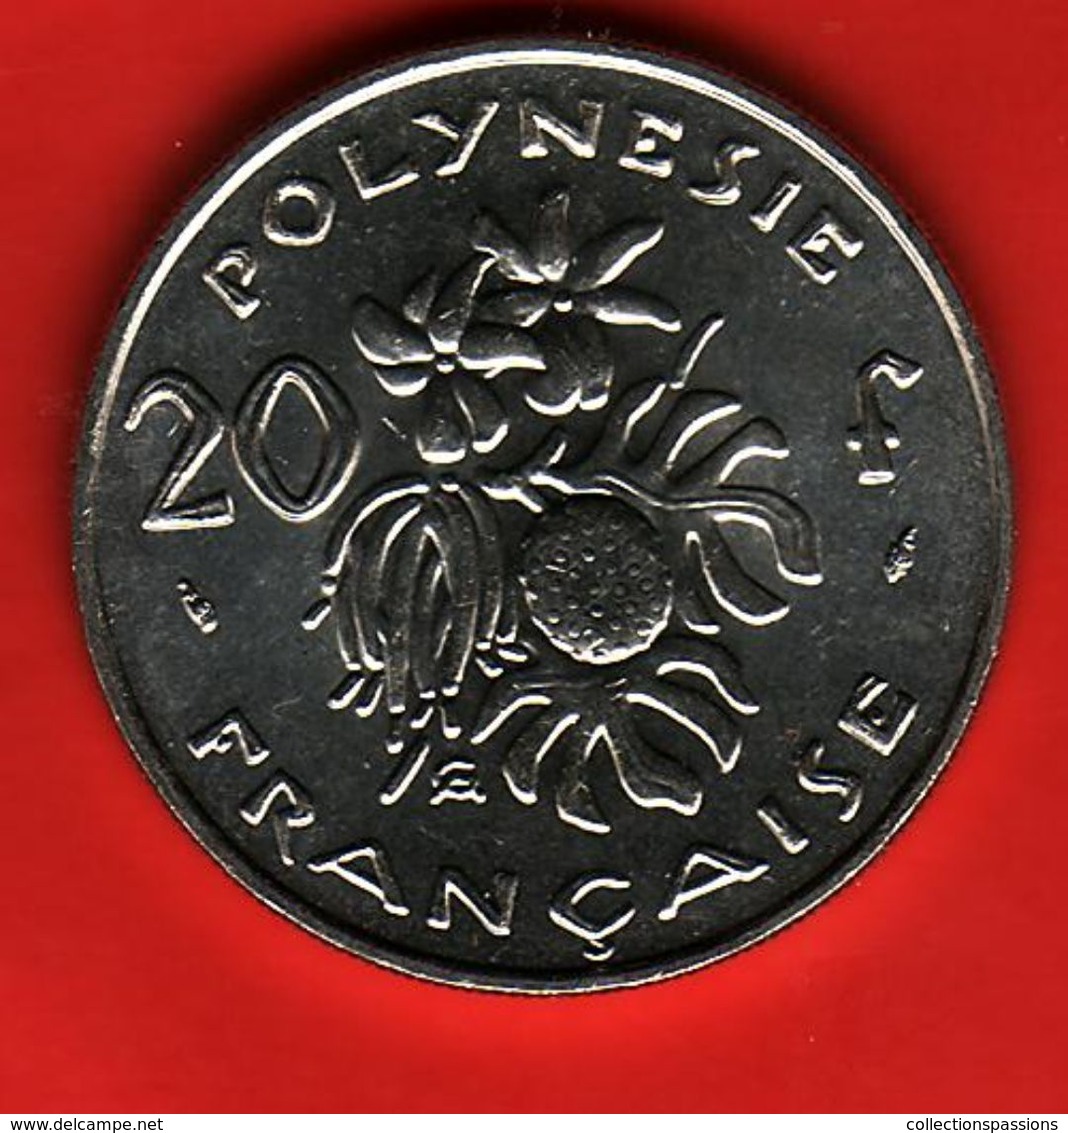 - POLYNESIE FRANCAISE - 20 Francs - 1993 - - Polinesia Francesa